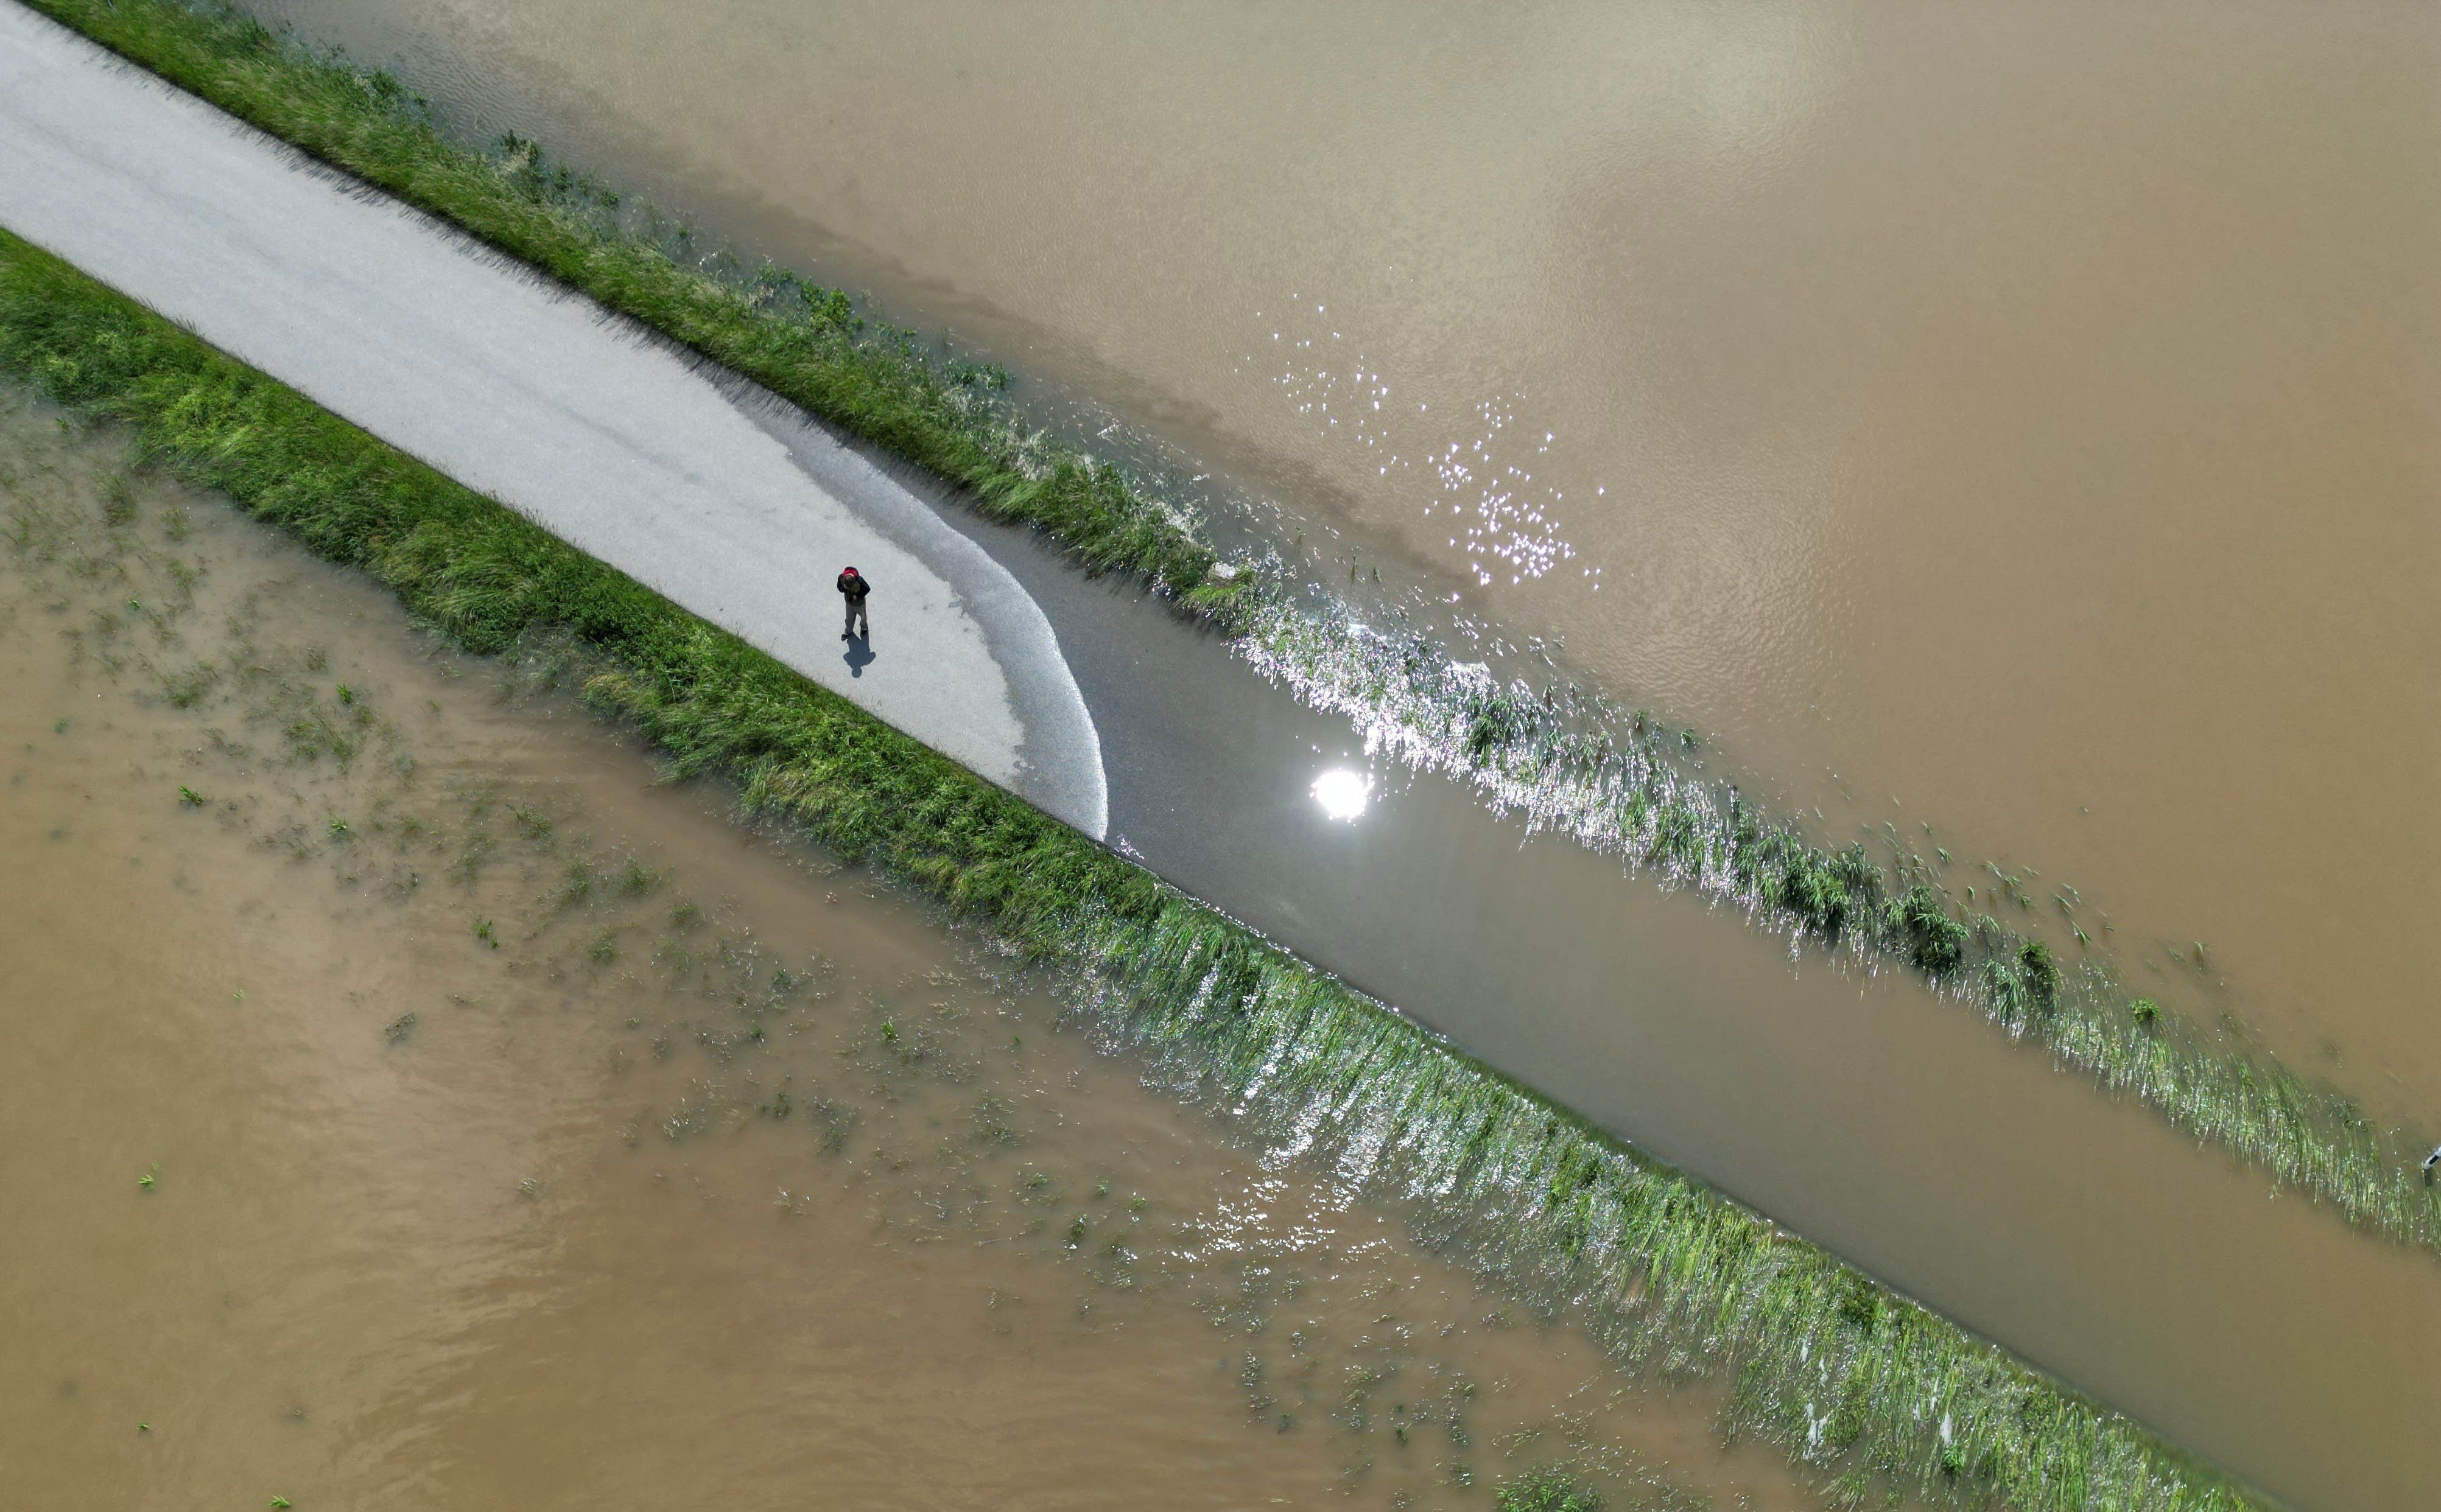 Der Fluss Glenn ist bei Eglhausen in der Gemeinde Hohenkammer über die Ufer getreten und überschwemmt Wiesen, Felder und eine Straße, auf der ein Mensch steht (Aufnahmen mit einer Drohne). 